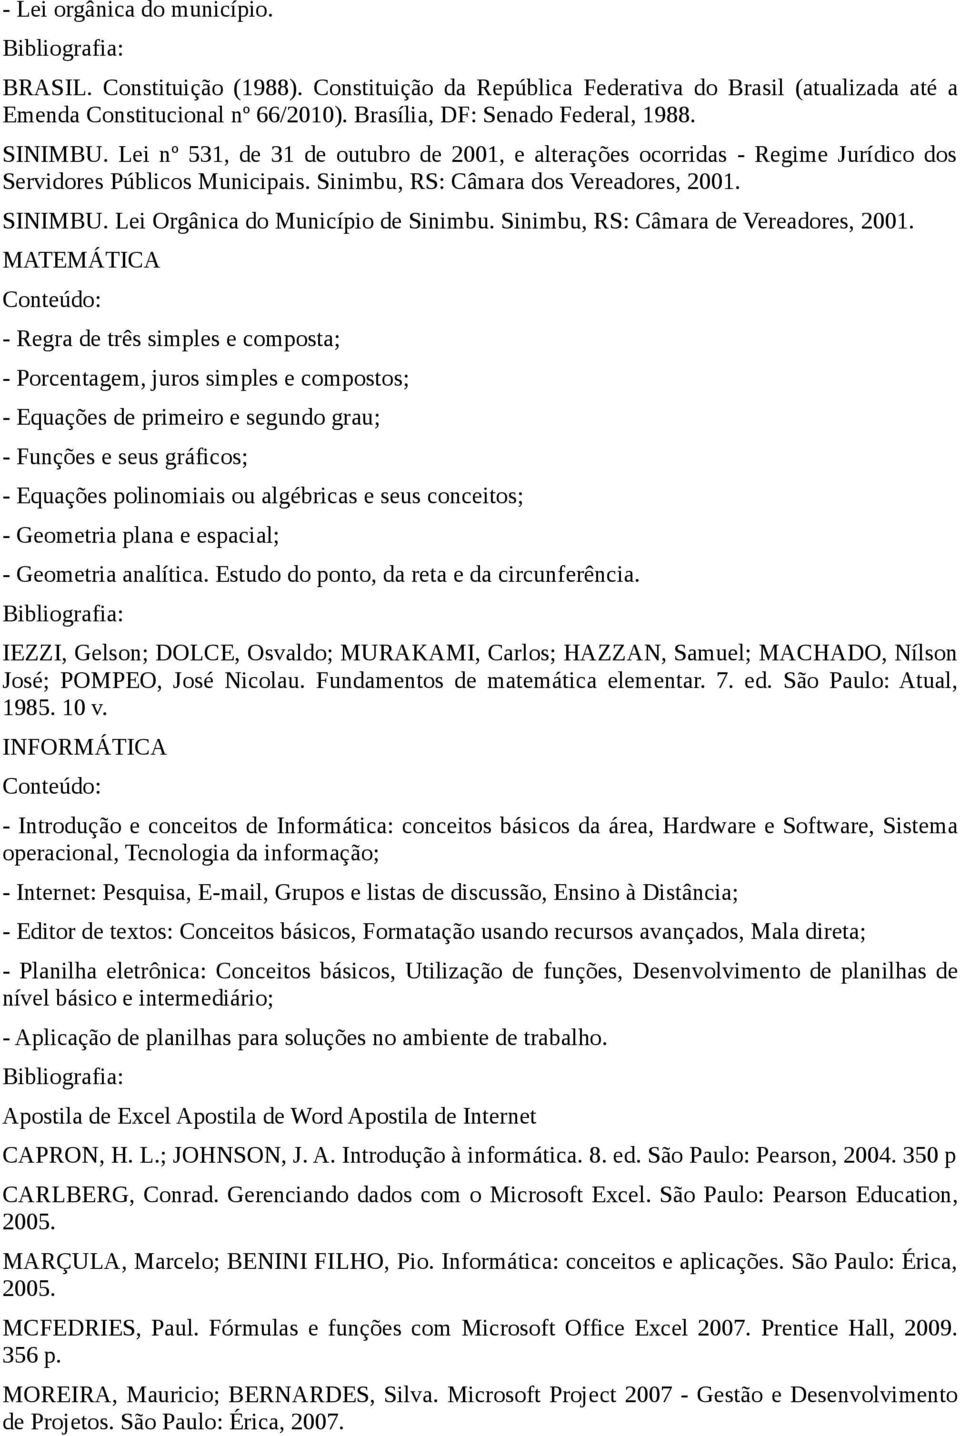 Lei Orgânica do Município de Sinimbu. Sinimbu, RS: Câmara de Vereadores, 2001.